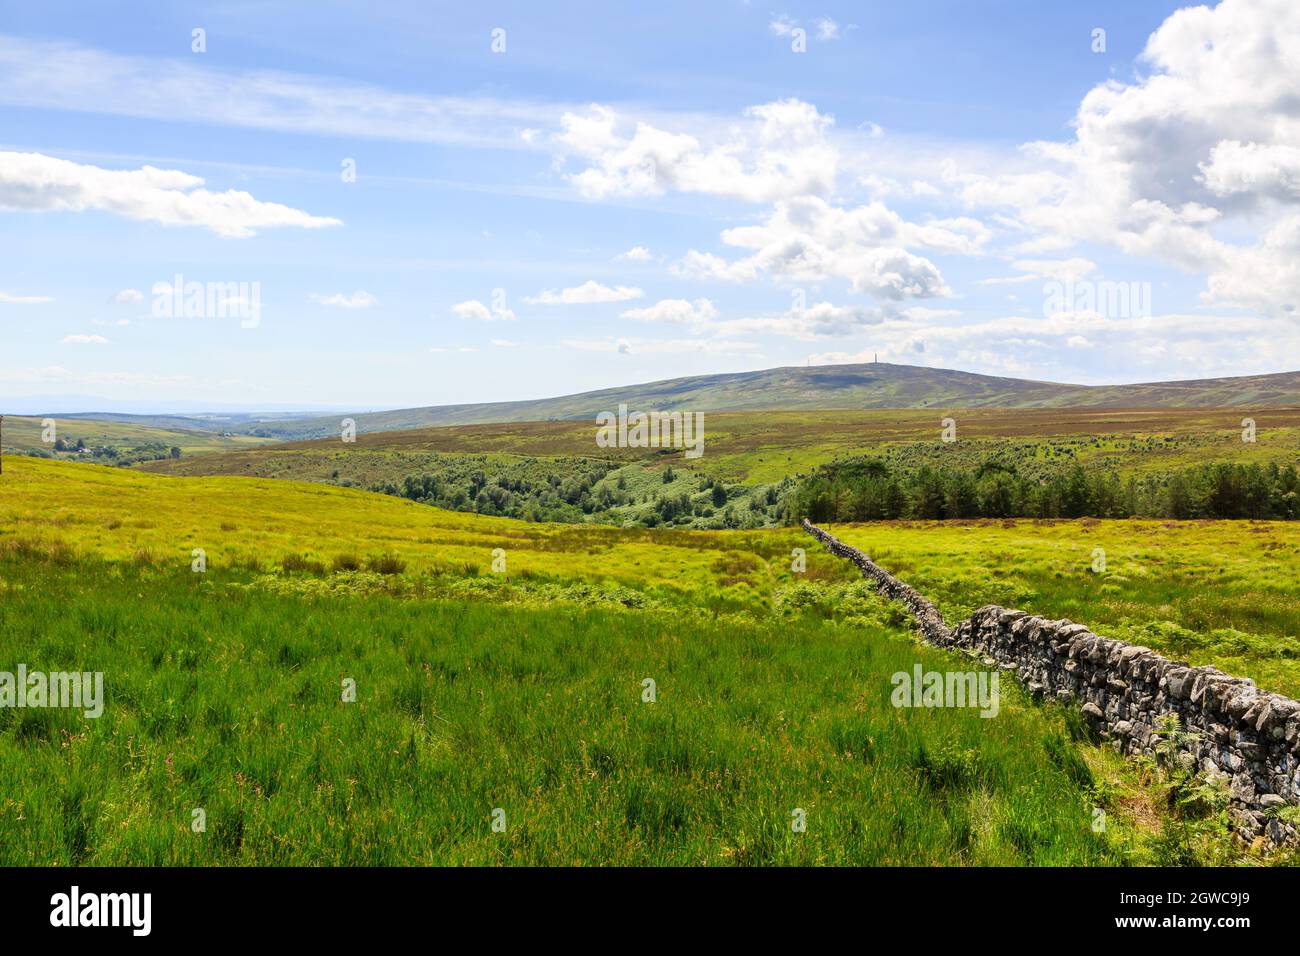 Vieille terre de pierre sèche sur une colline de landes écossaises Banque D'Images